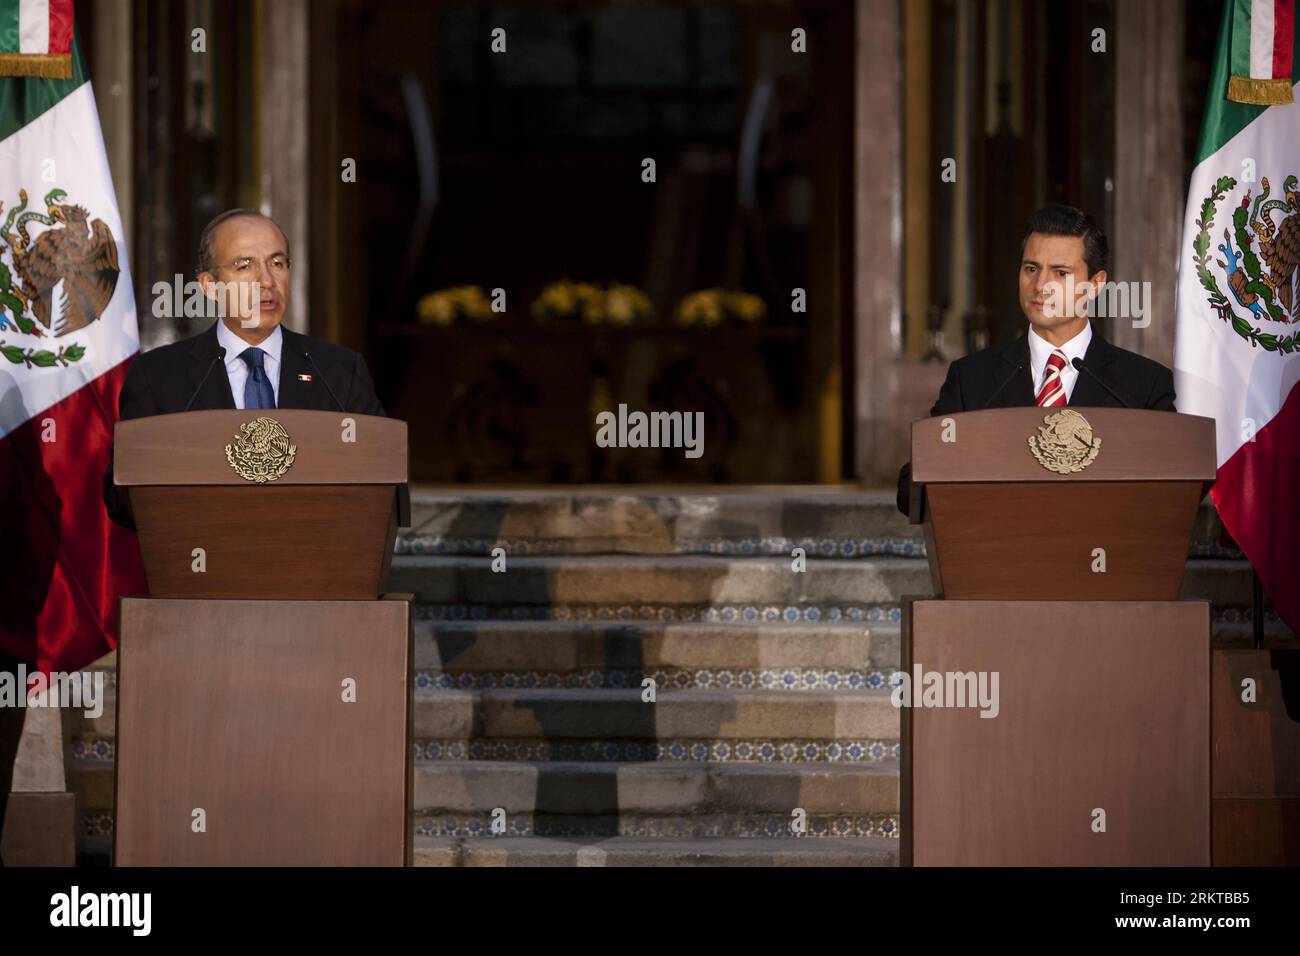 Bildnummer : 58435227 Datum : 05.09.2012 Copyright : imago/Xinhua (120906) -- MEXICO, 6 septembre 2012 (Xinhua) -- le président mexicain Felipe Calderon (à gauche) et le président mexicain élu Enrique Pena Nieto assistent à une conférence de presse après une réunion à la résidence officielle Los Pinos à Mexico, capitale du Mexique, le 5 septembre 2012. (Xinhua/Rodrigo Oropeza) (zw) MEXICO-MEXICO CITY-CALDERON-PENA NIETO PUBLICATIONxNOTxINxCHN People Politik xjh x0x premiumd 2012 quer 58435227 Date 05 09 2012 Copyright Imago XINHUA Mexico sept 6 2012 XINHUA Président MEXICAIN Felipe Calderon l et MEXICAN Presi Banque D'Images